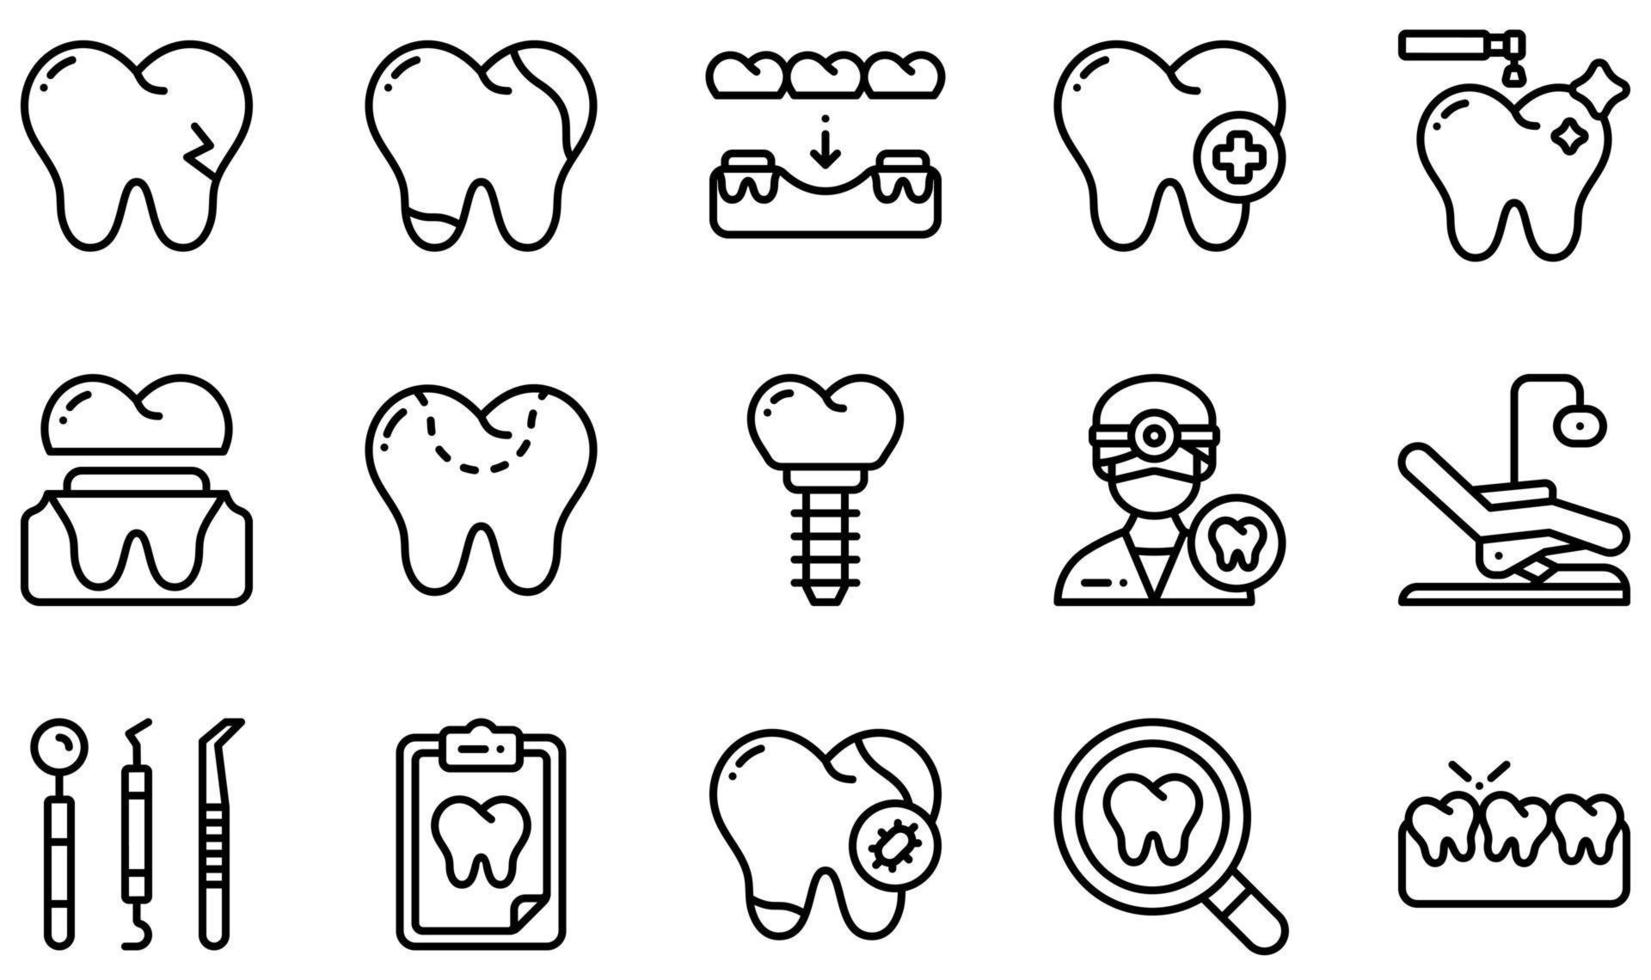 ensemble d'icônes vectorielles liées aux soins dentaires. contient des icônes telles que la dent cassée, la carie, les soins dentaires, la couronne dentaire, le remplissage dentaire, le dentiste et plus encore. vecteur